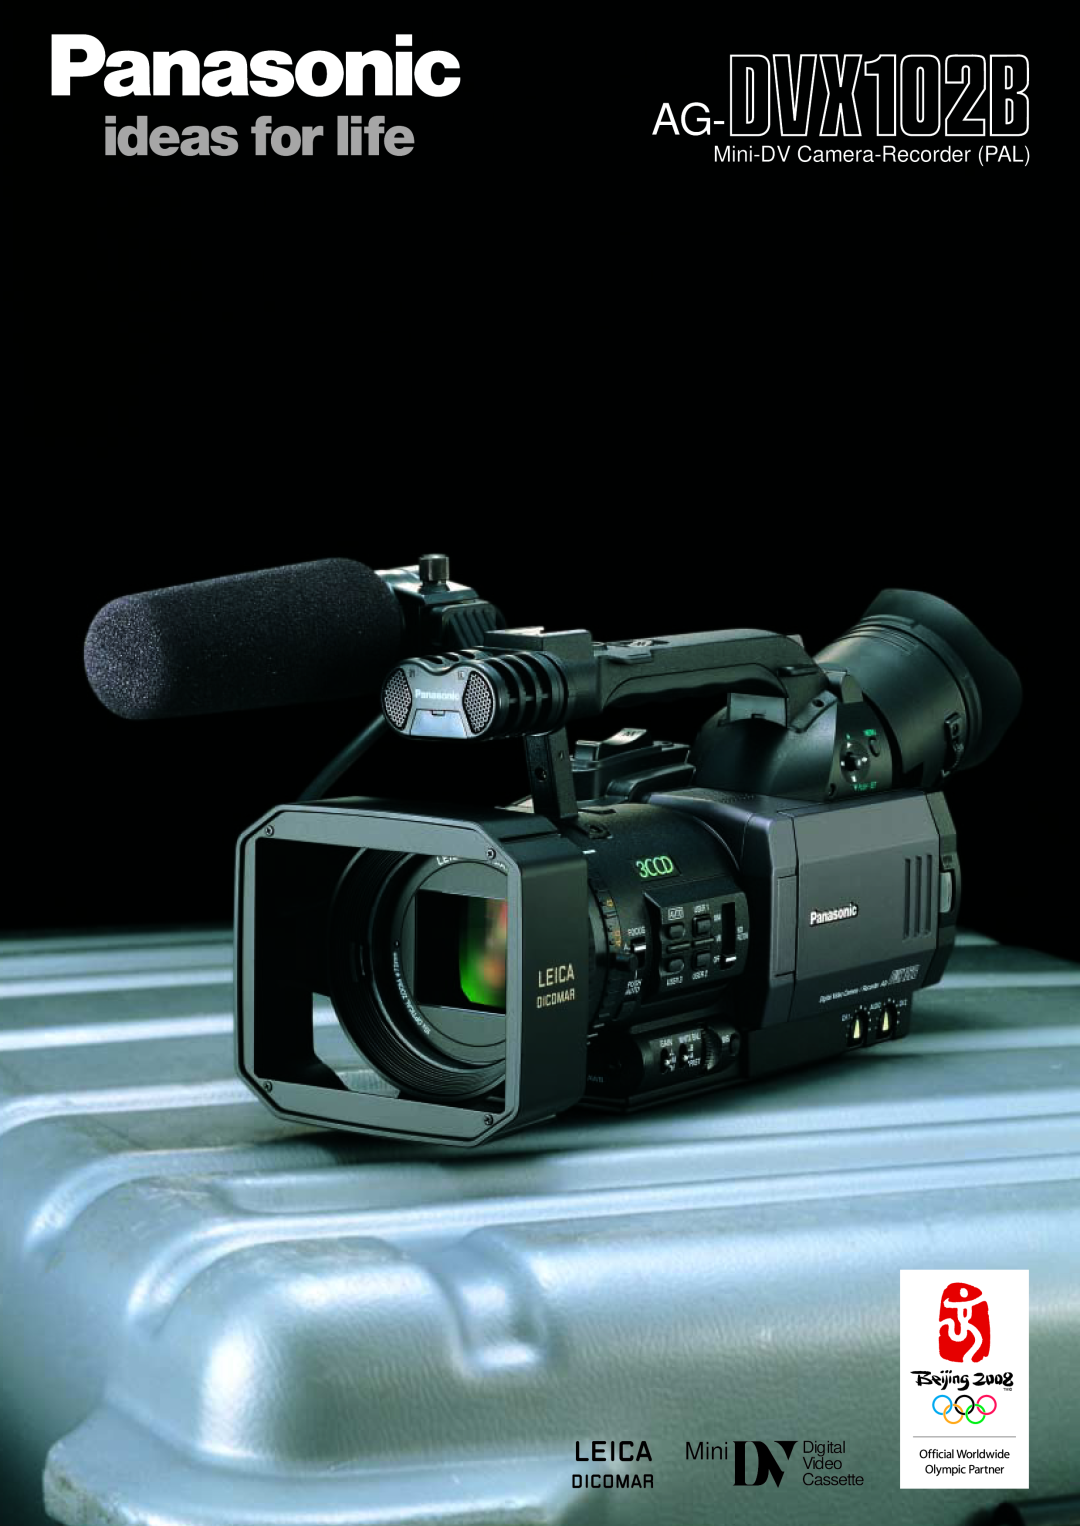 Panasonic AG-DVX102B manual Mini-DV Camera-Recorder PAL, Mini Digital Video Cassette 